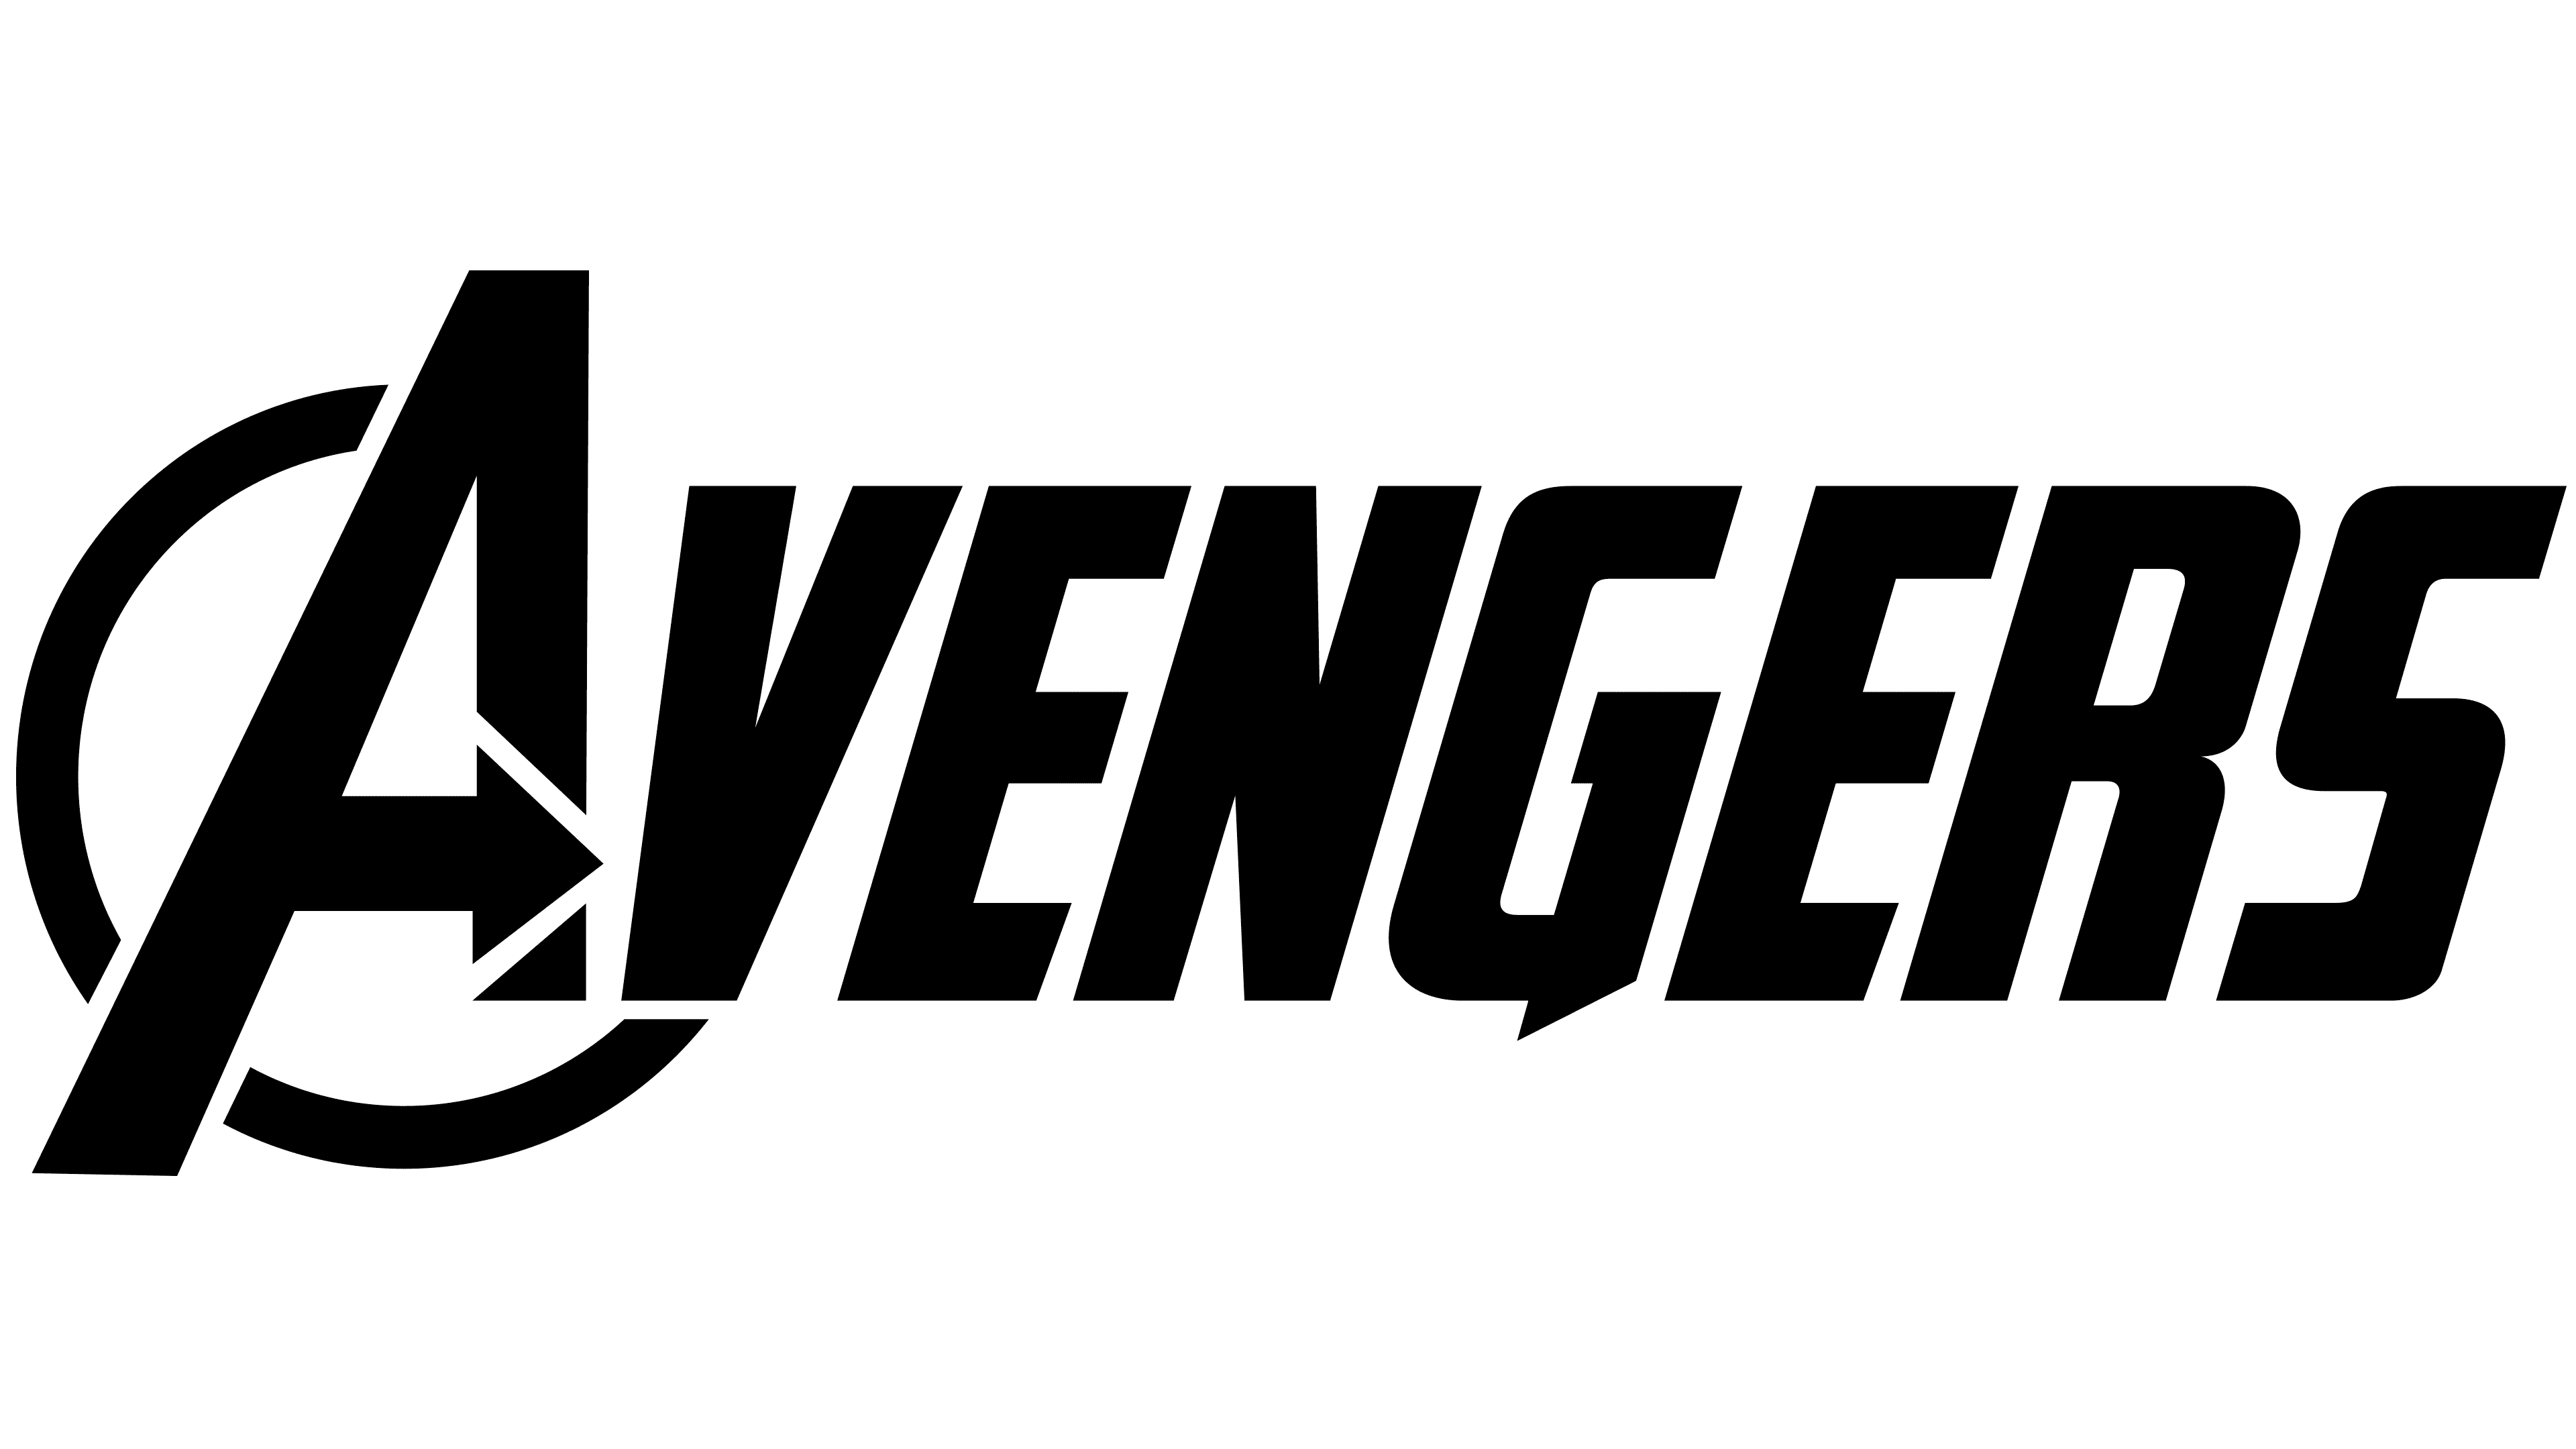 hulk avengers logo